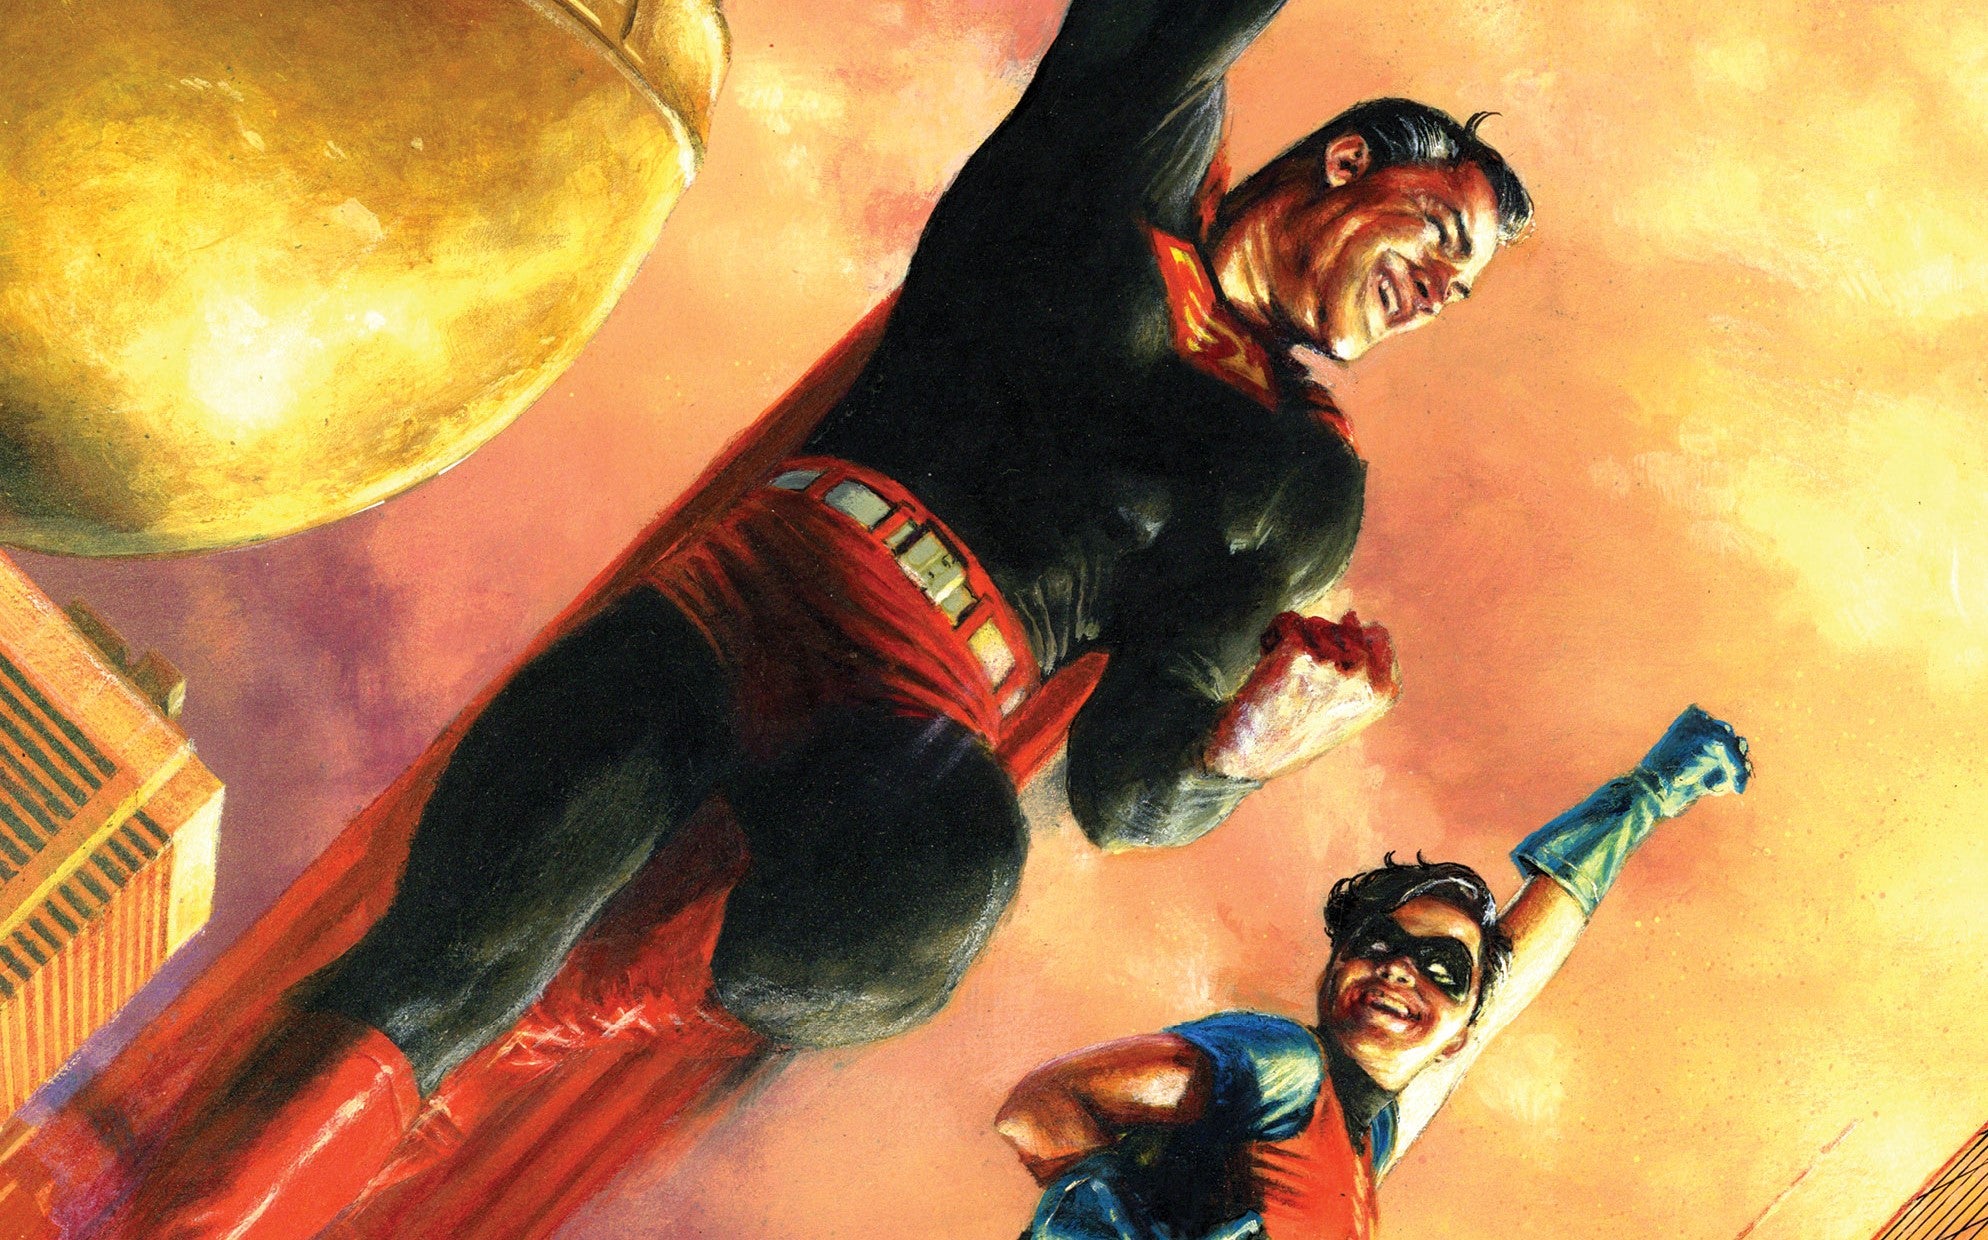 Superman flying alongside Jonathan Kent